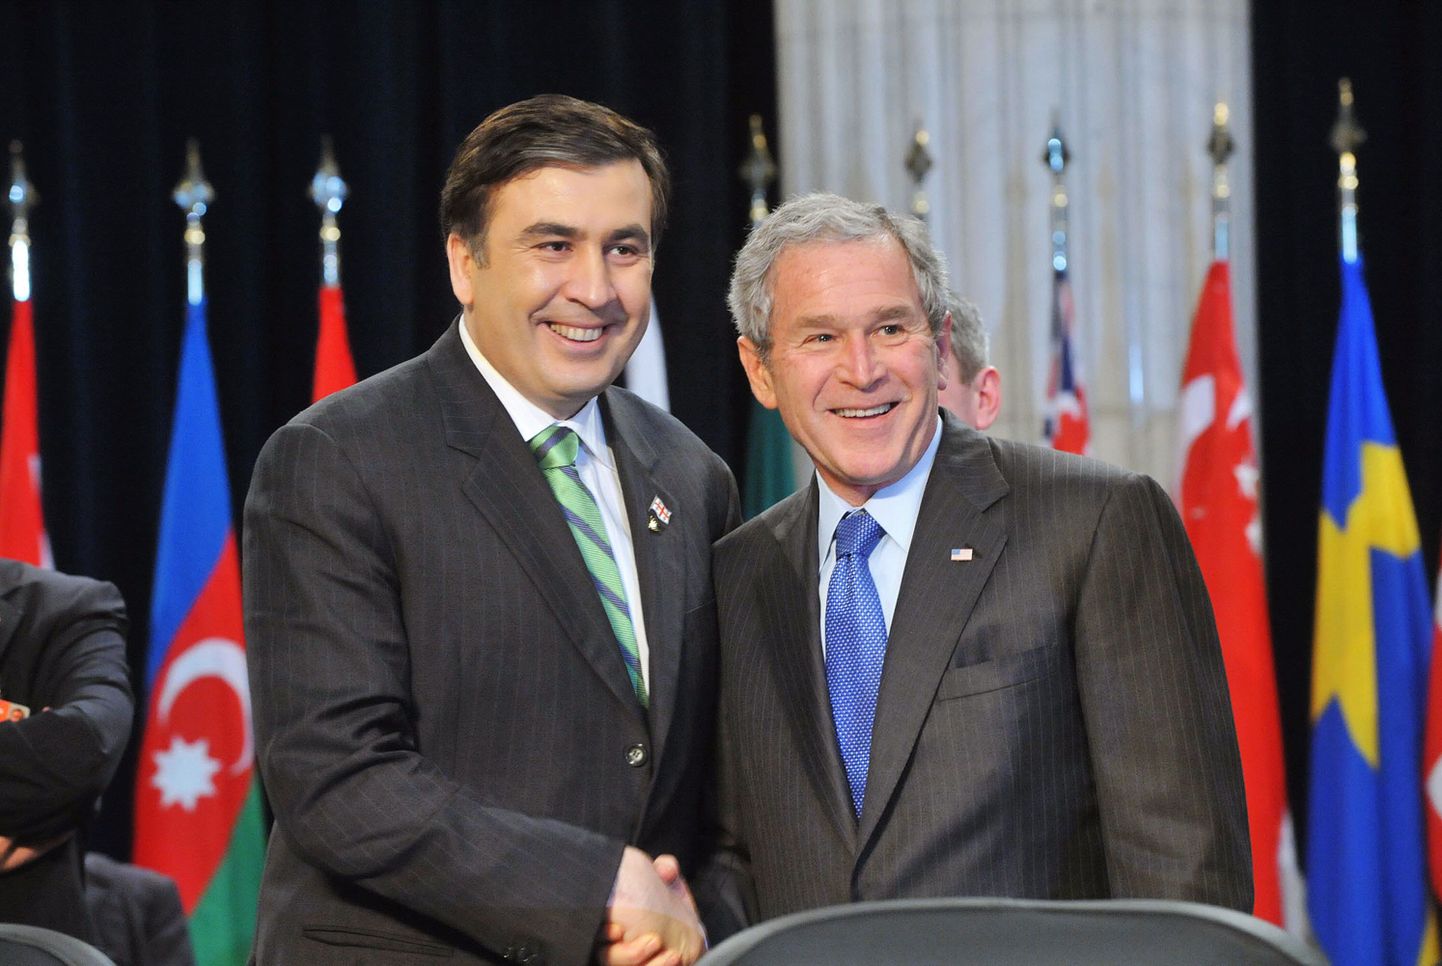 Lähedased liitlased Gruusia riigipea Mihheil Saakašvili ja USA president George W. Bush.